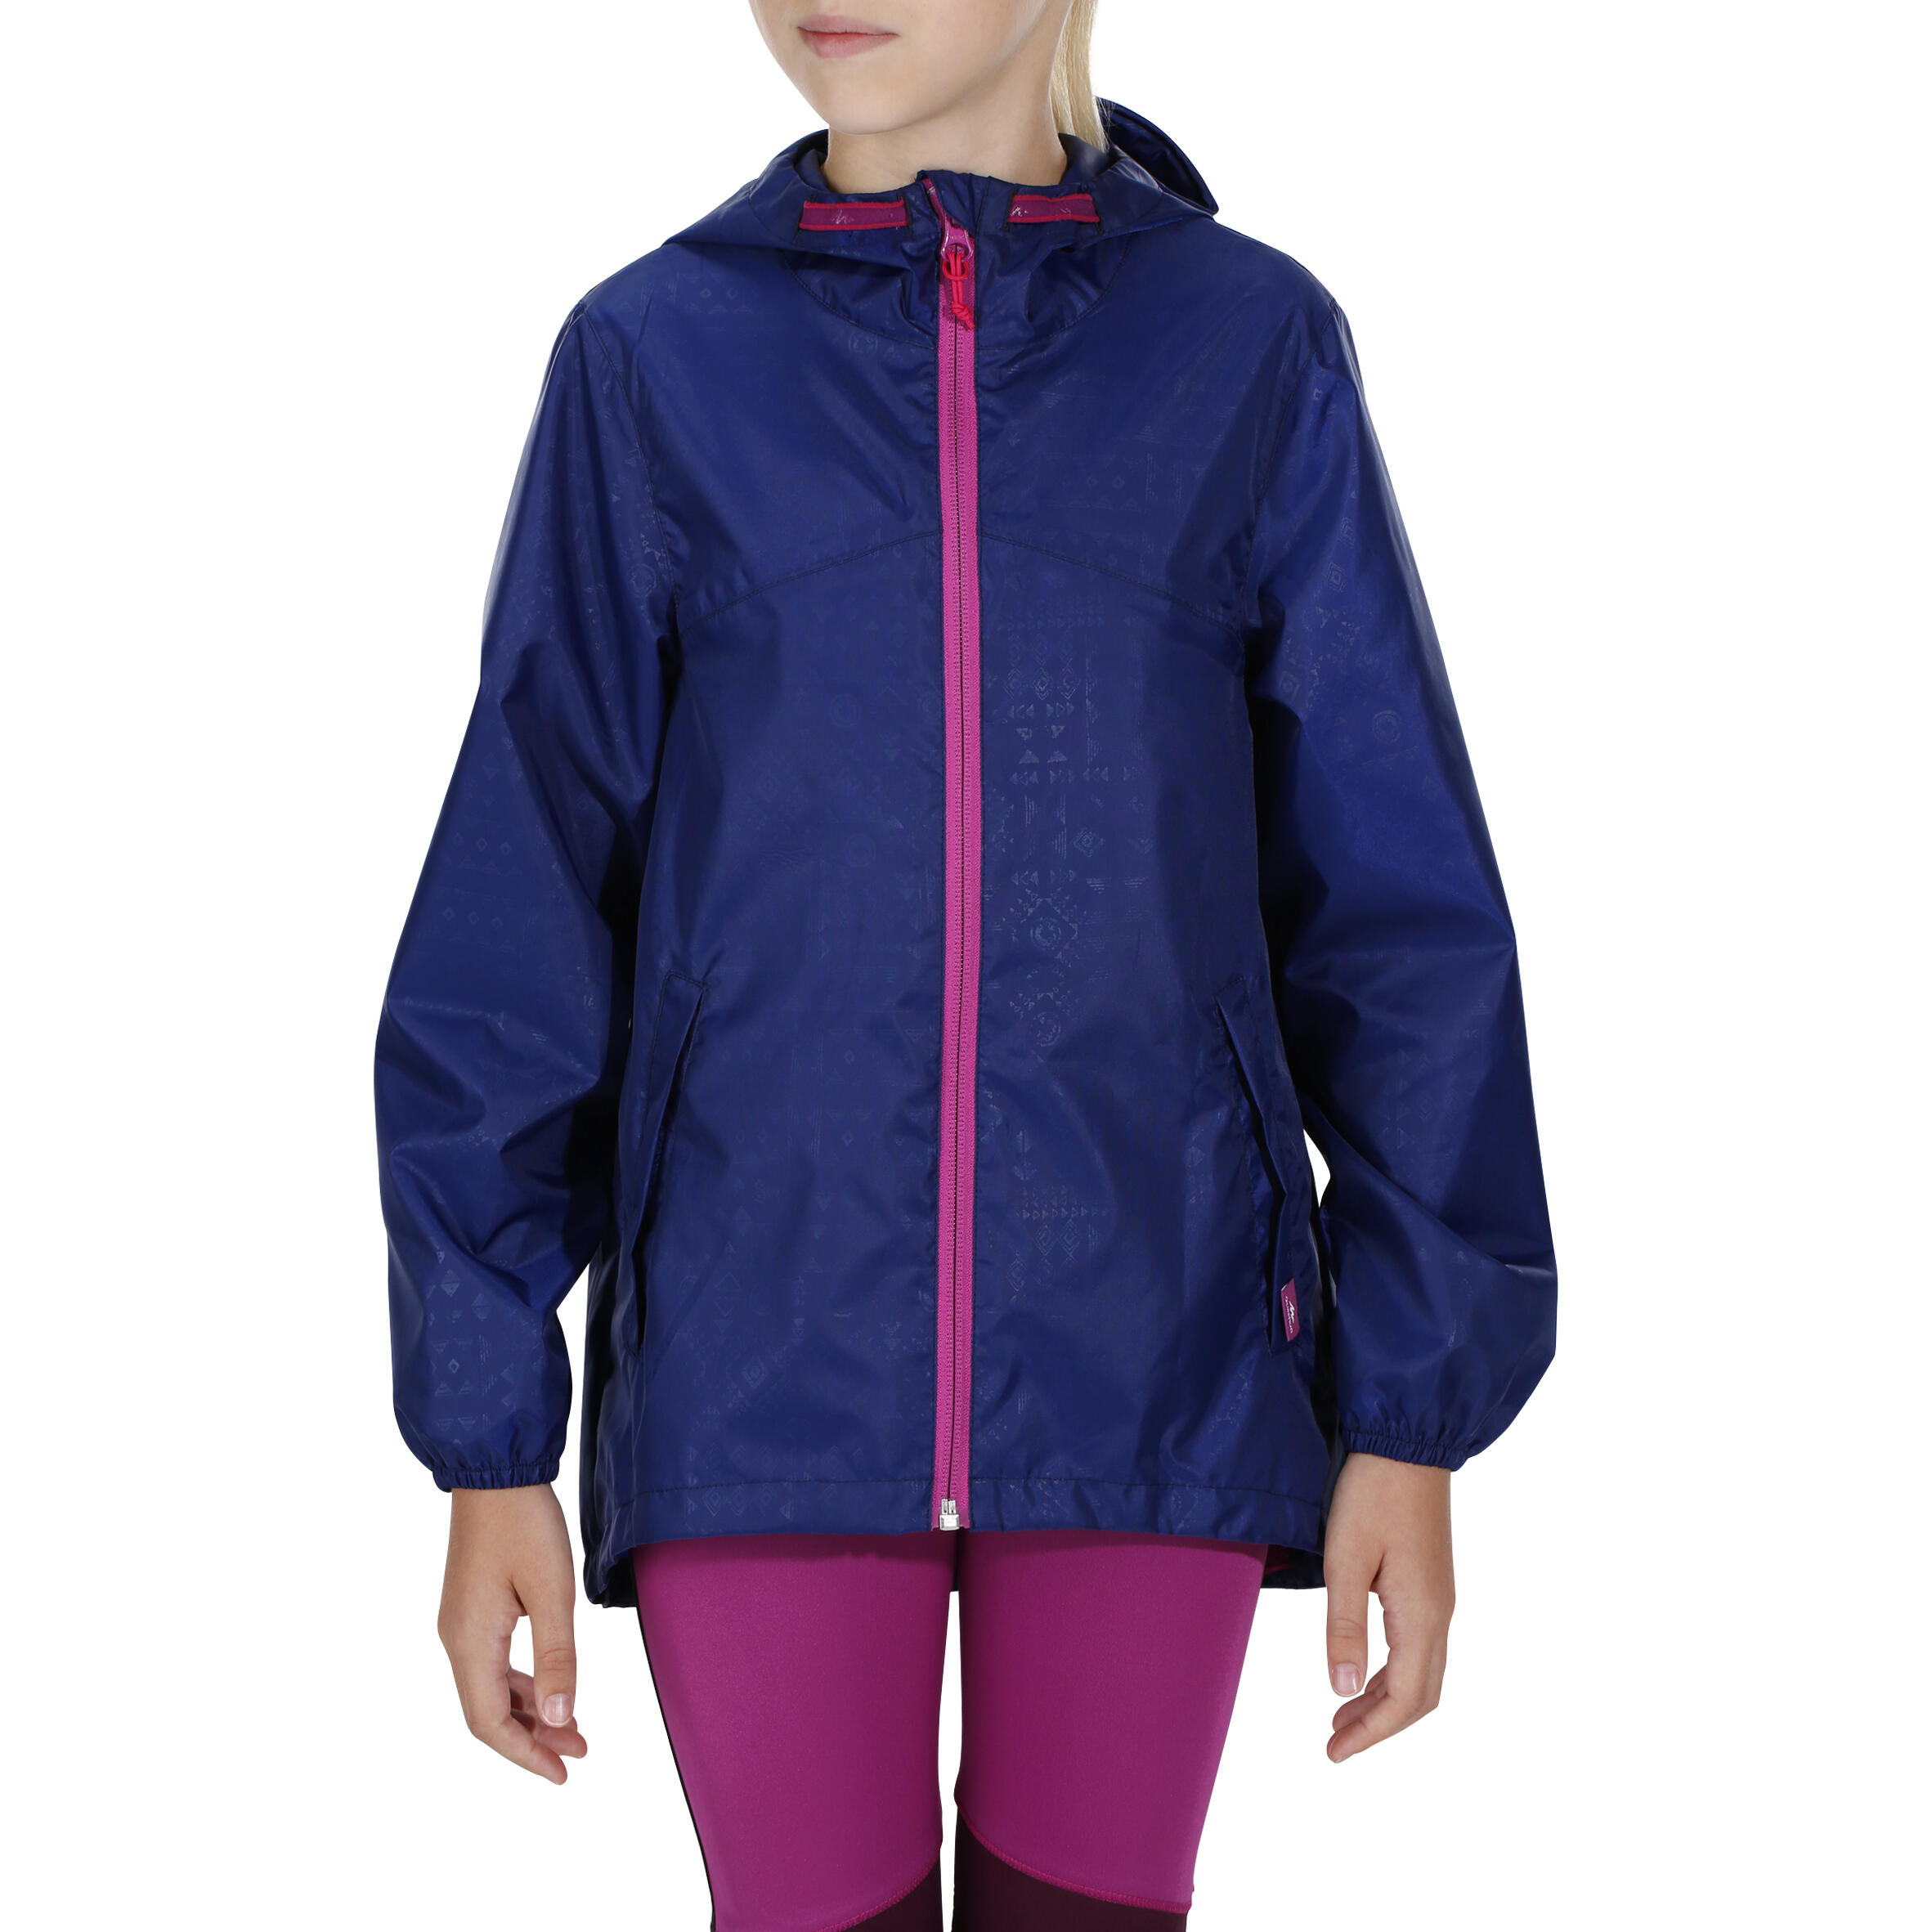 Hike 100 Waterproof Hiking Girl's Jacket - Navy Blue 3/14